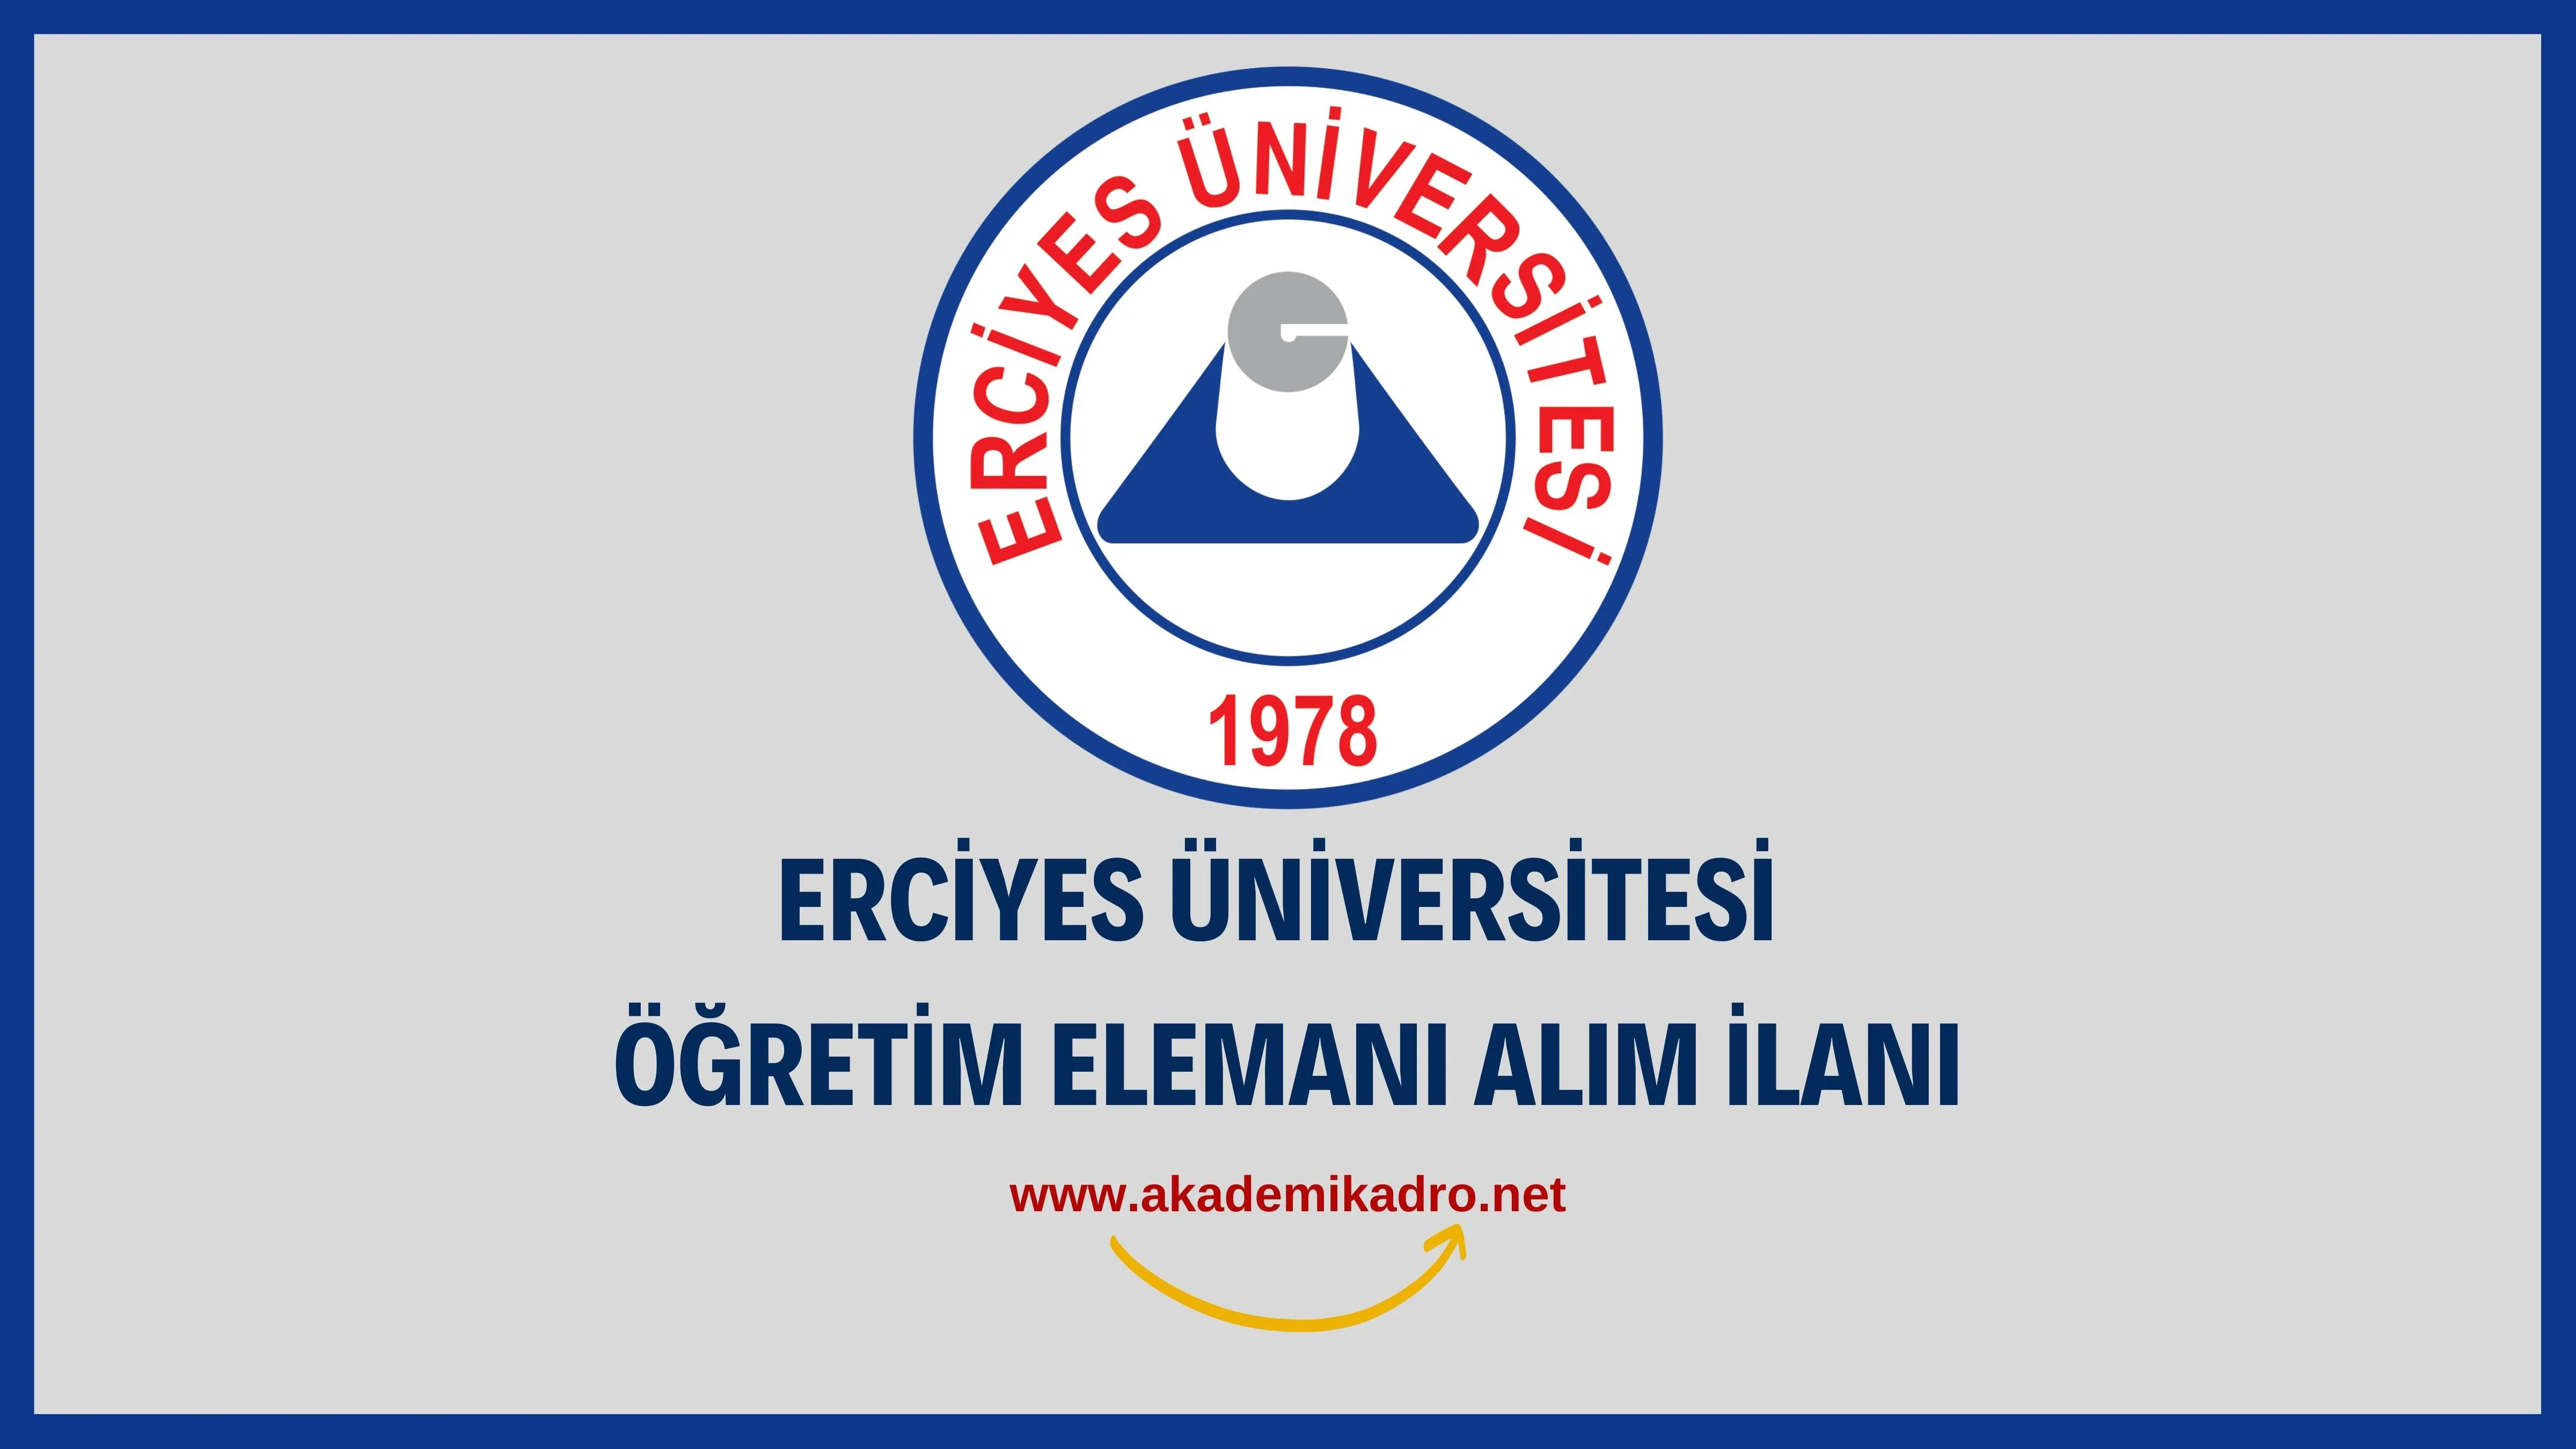 Erciyes Üniversitesi Öğretim görevlisi ve öğretim üyesi olmak üzere 31 Öğretim elemanı alacak.